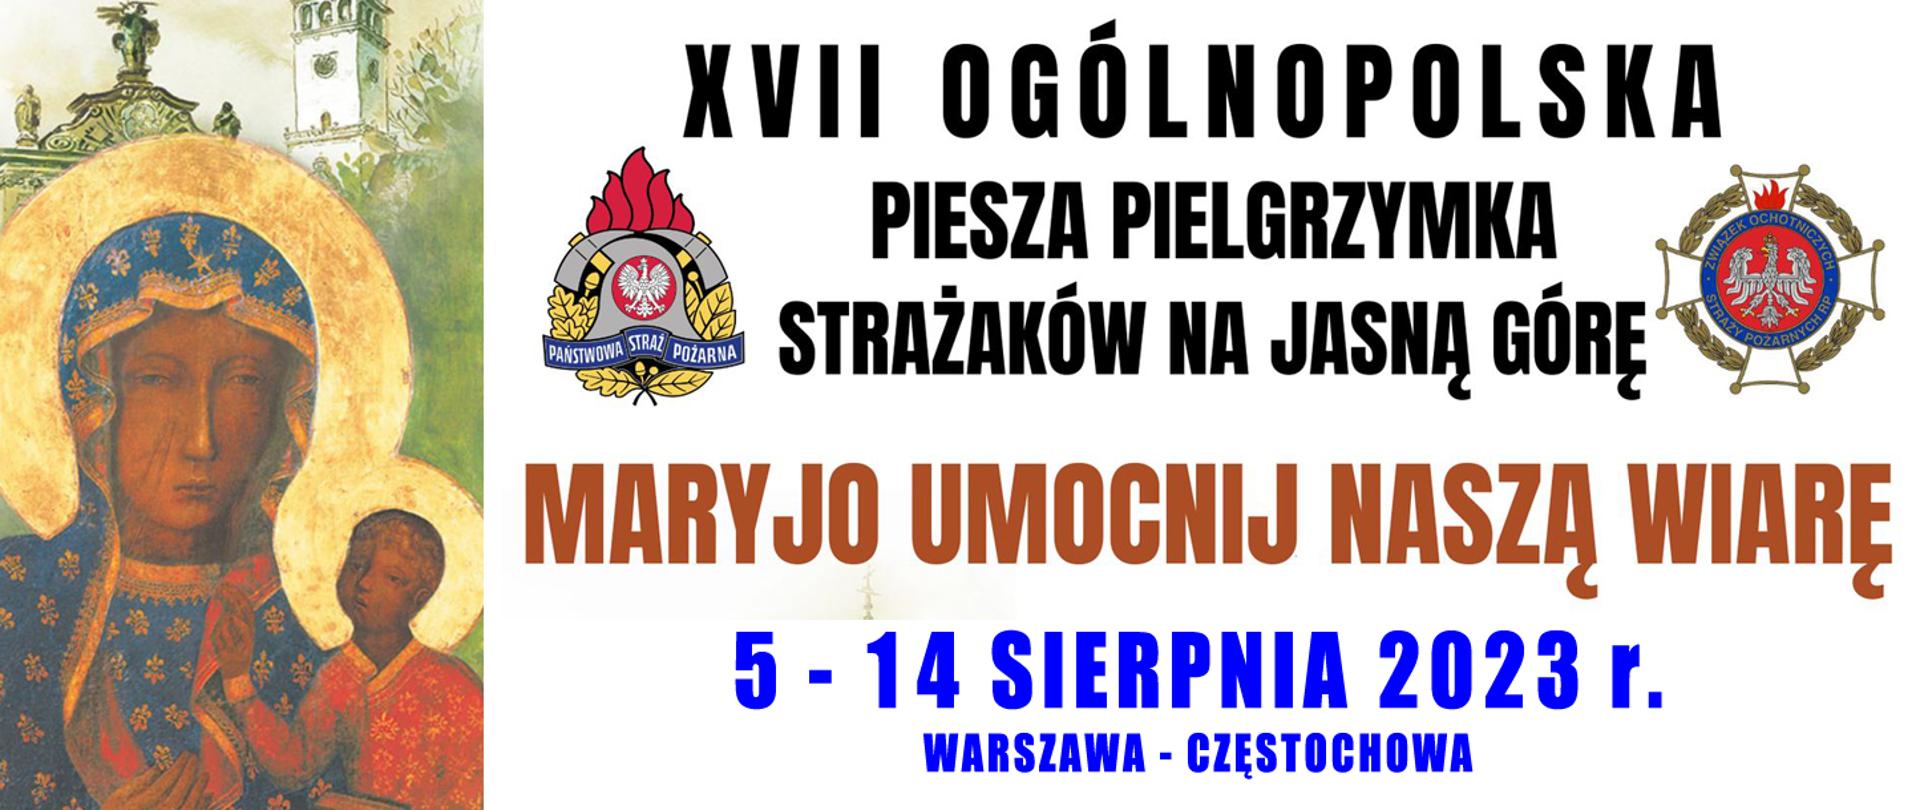 Baner z napisem "XVII Ogólnopolska Piesza Pielgrzymka Strażaków na Jasną Górę - Maryjo umocnij naszą wiarę"